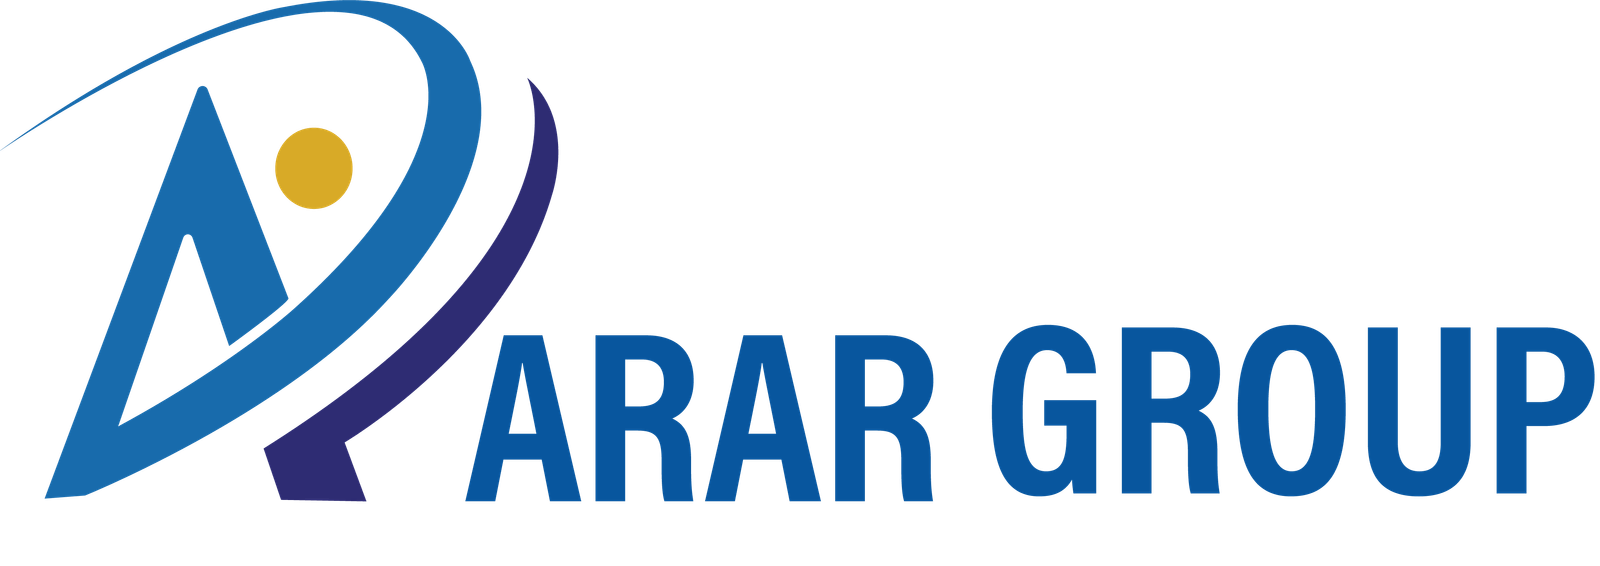 ARAR Group